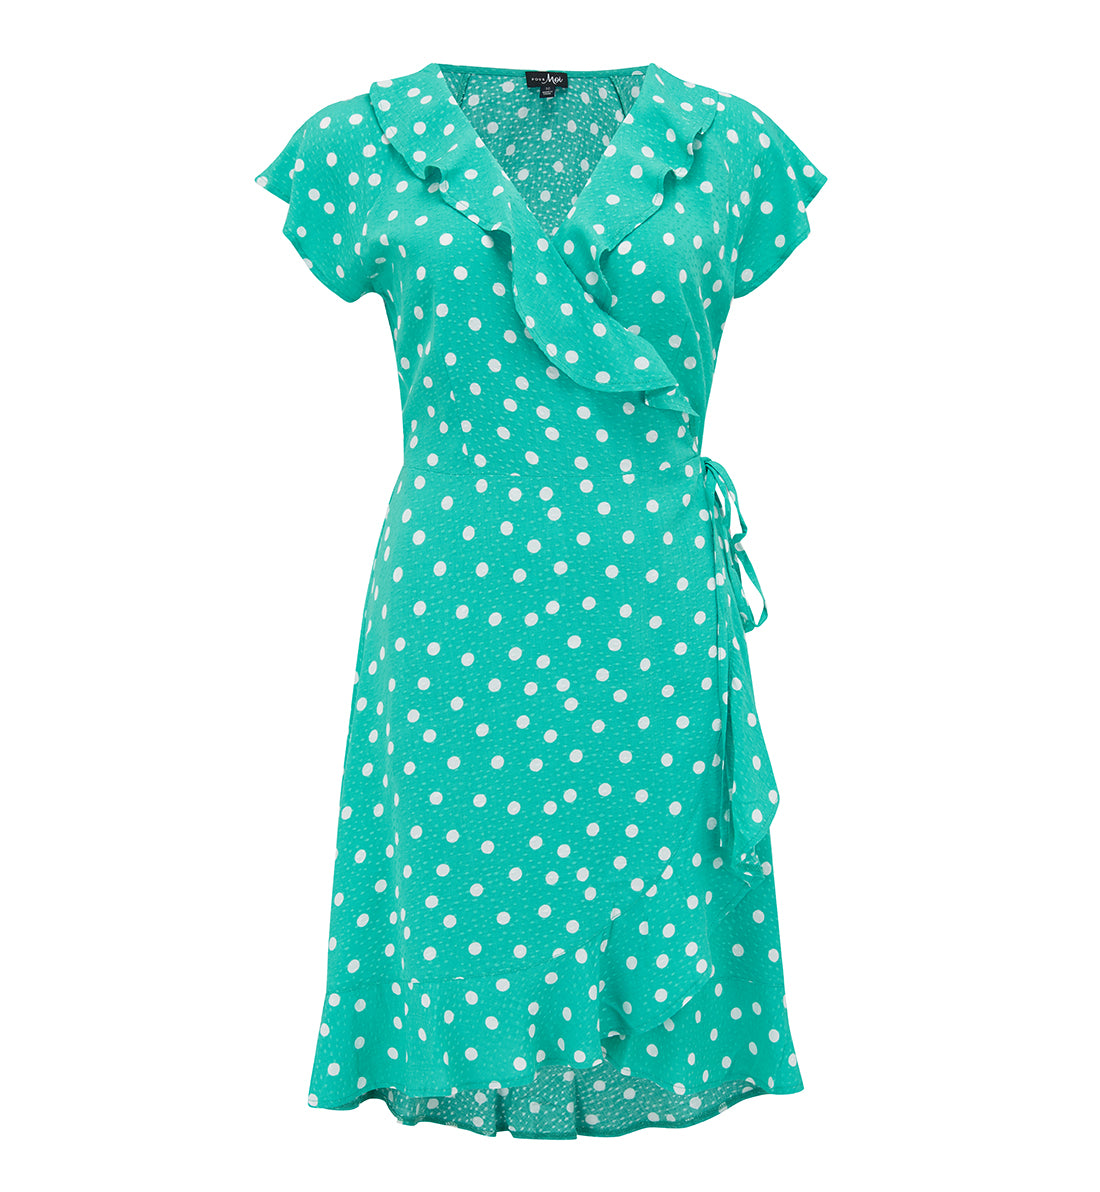 Pour Moi Frill Wrap Beach Dress (91020),XS,Green/White - Green/White,XS